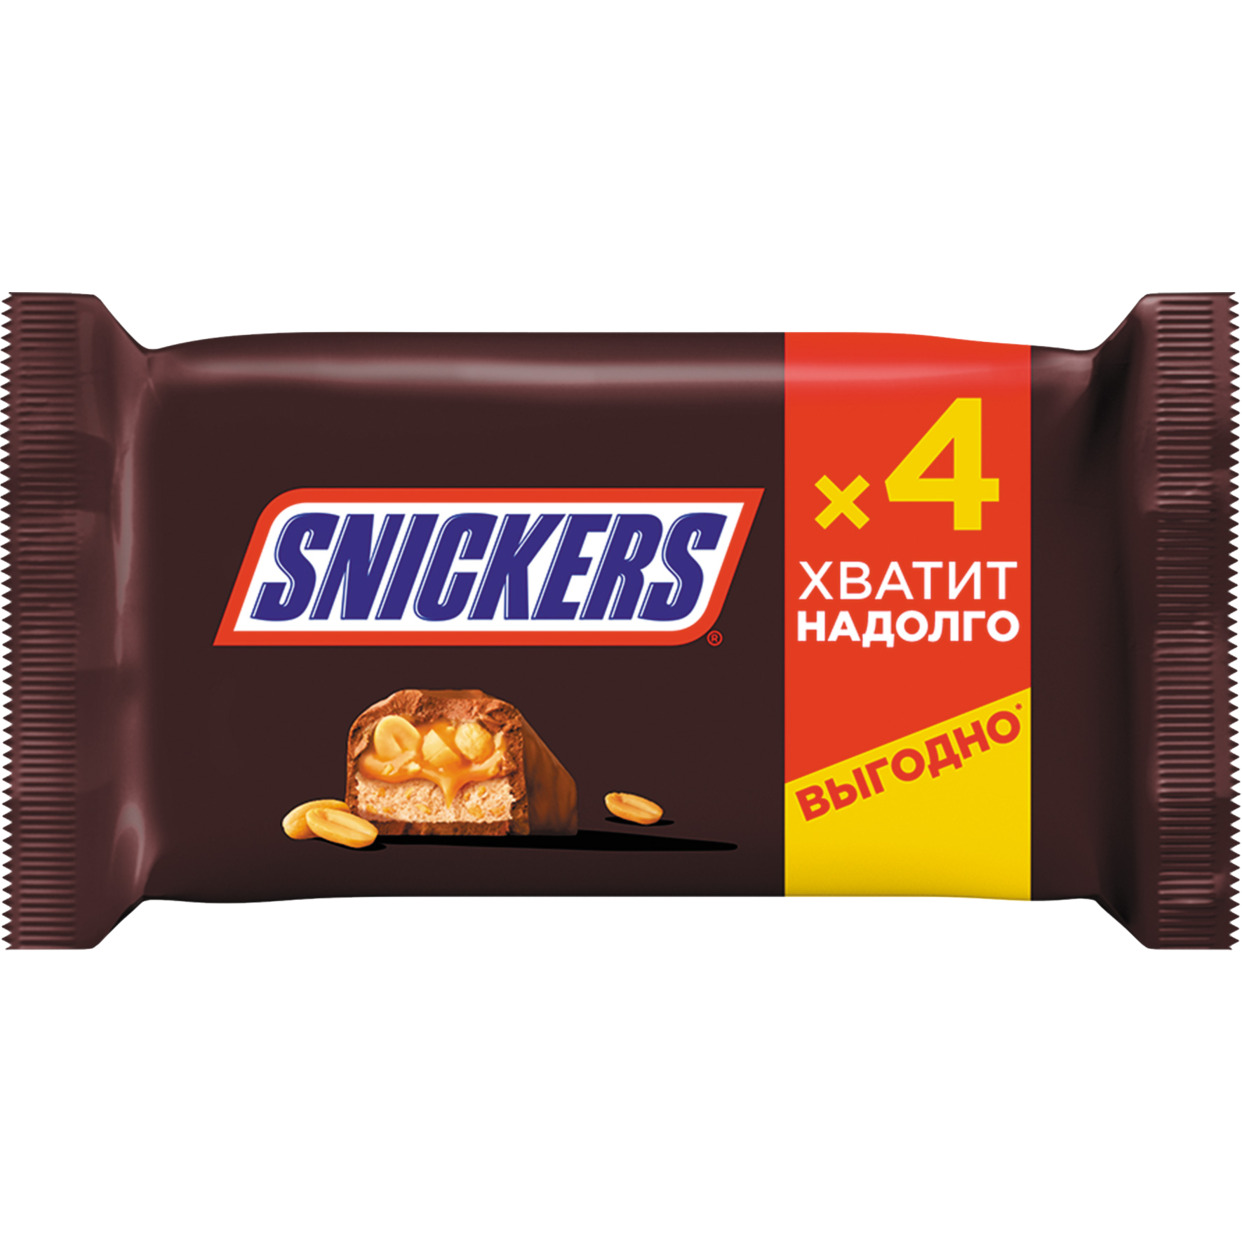 Шоколадный батончик Snickers с жареным арахисом, карамелью и нугой, покрытый молочным шоколадом, 160г (4х40г) по акции в Пятерочке